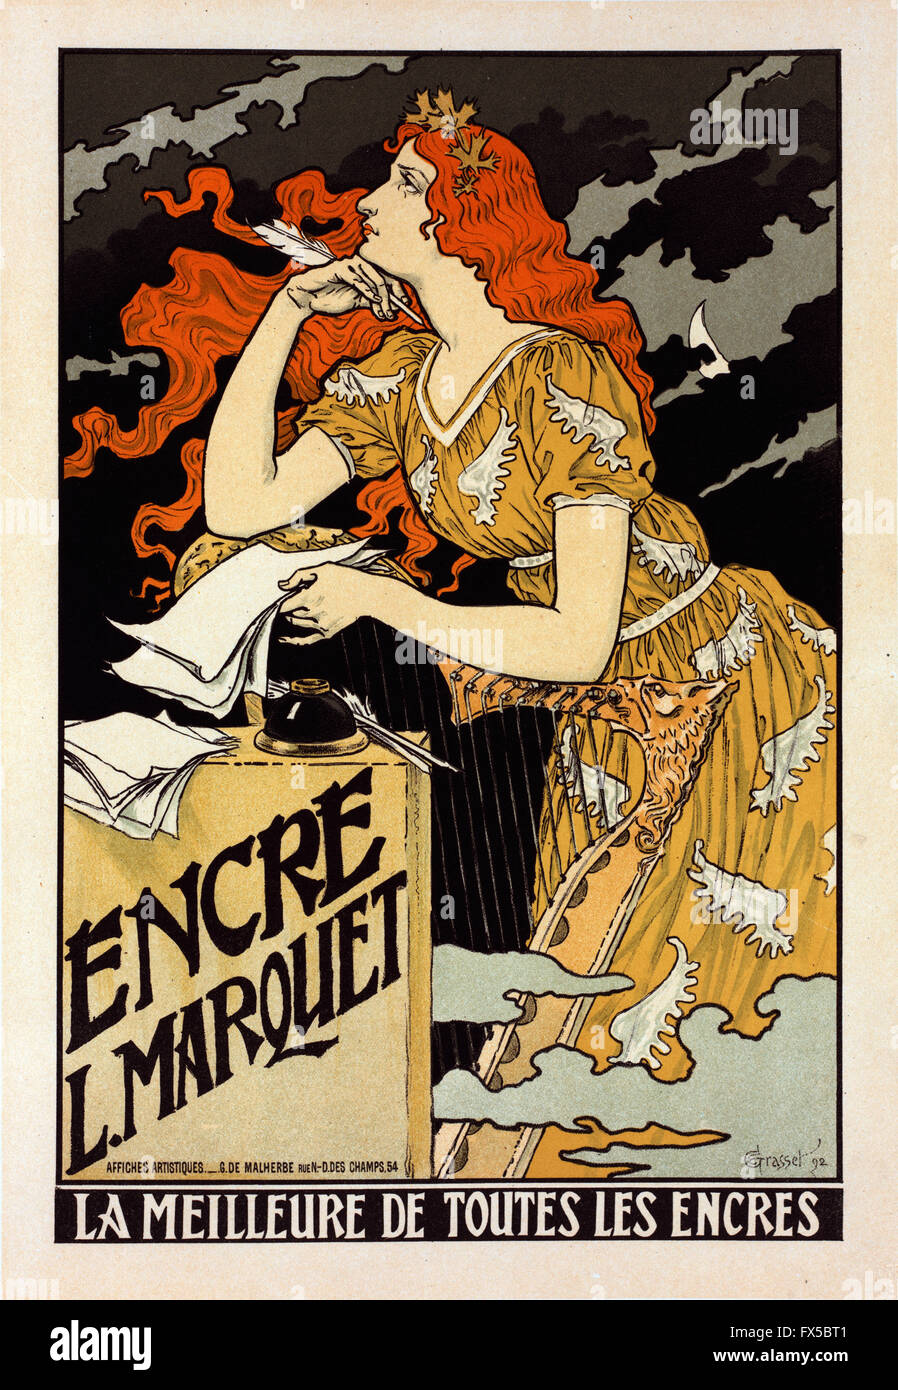 Eugene Grasset - Encre L.Marquet Foto de stock